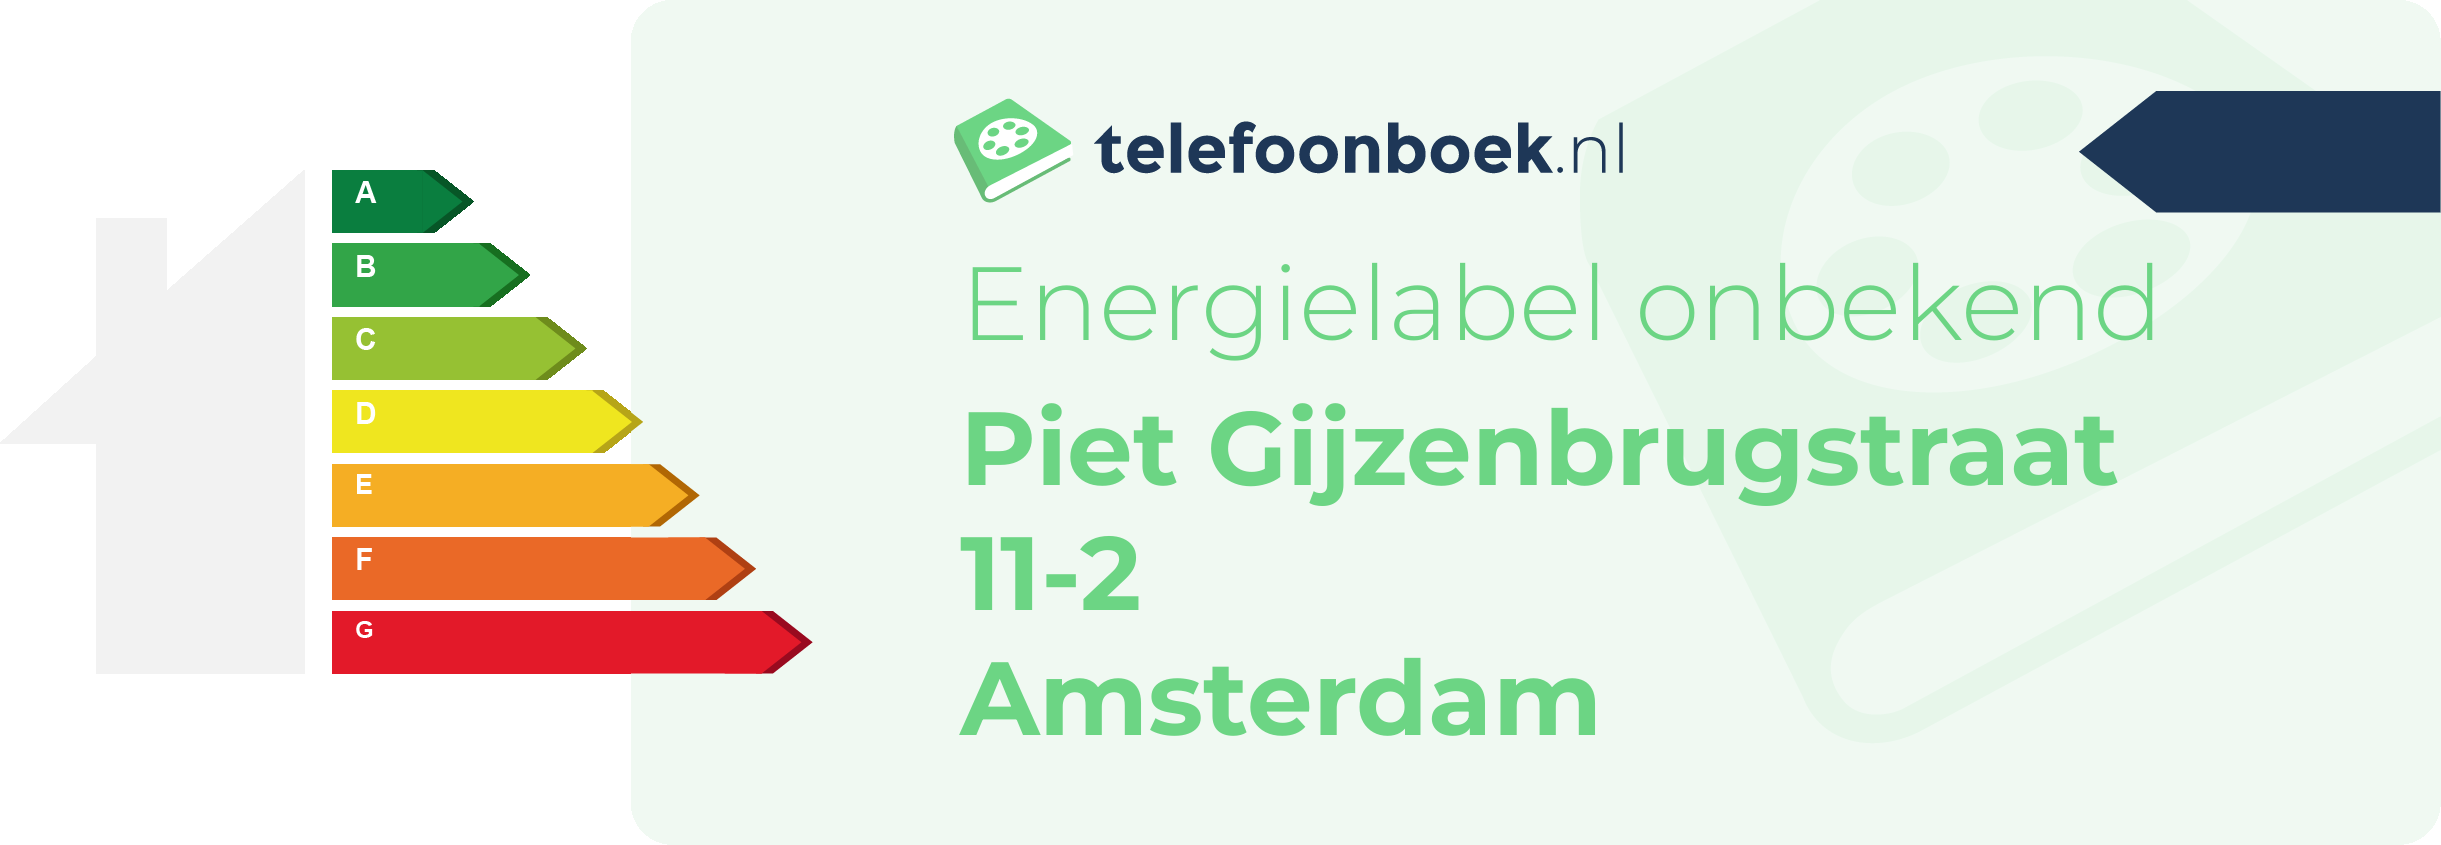 Energielabel Piet Gijzenbrugstraat 11-2 Amsterdam